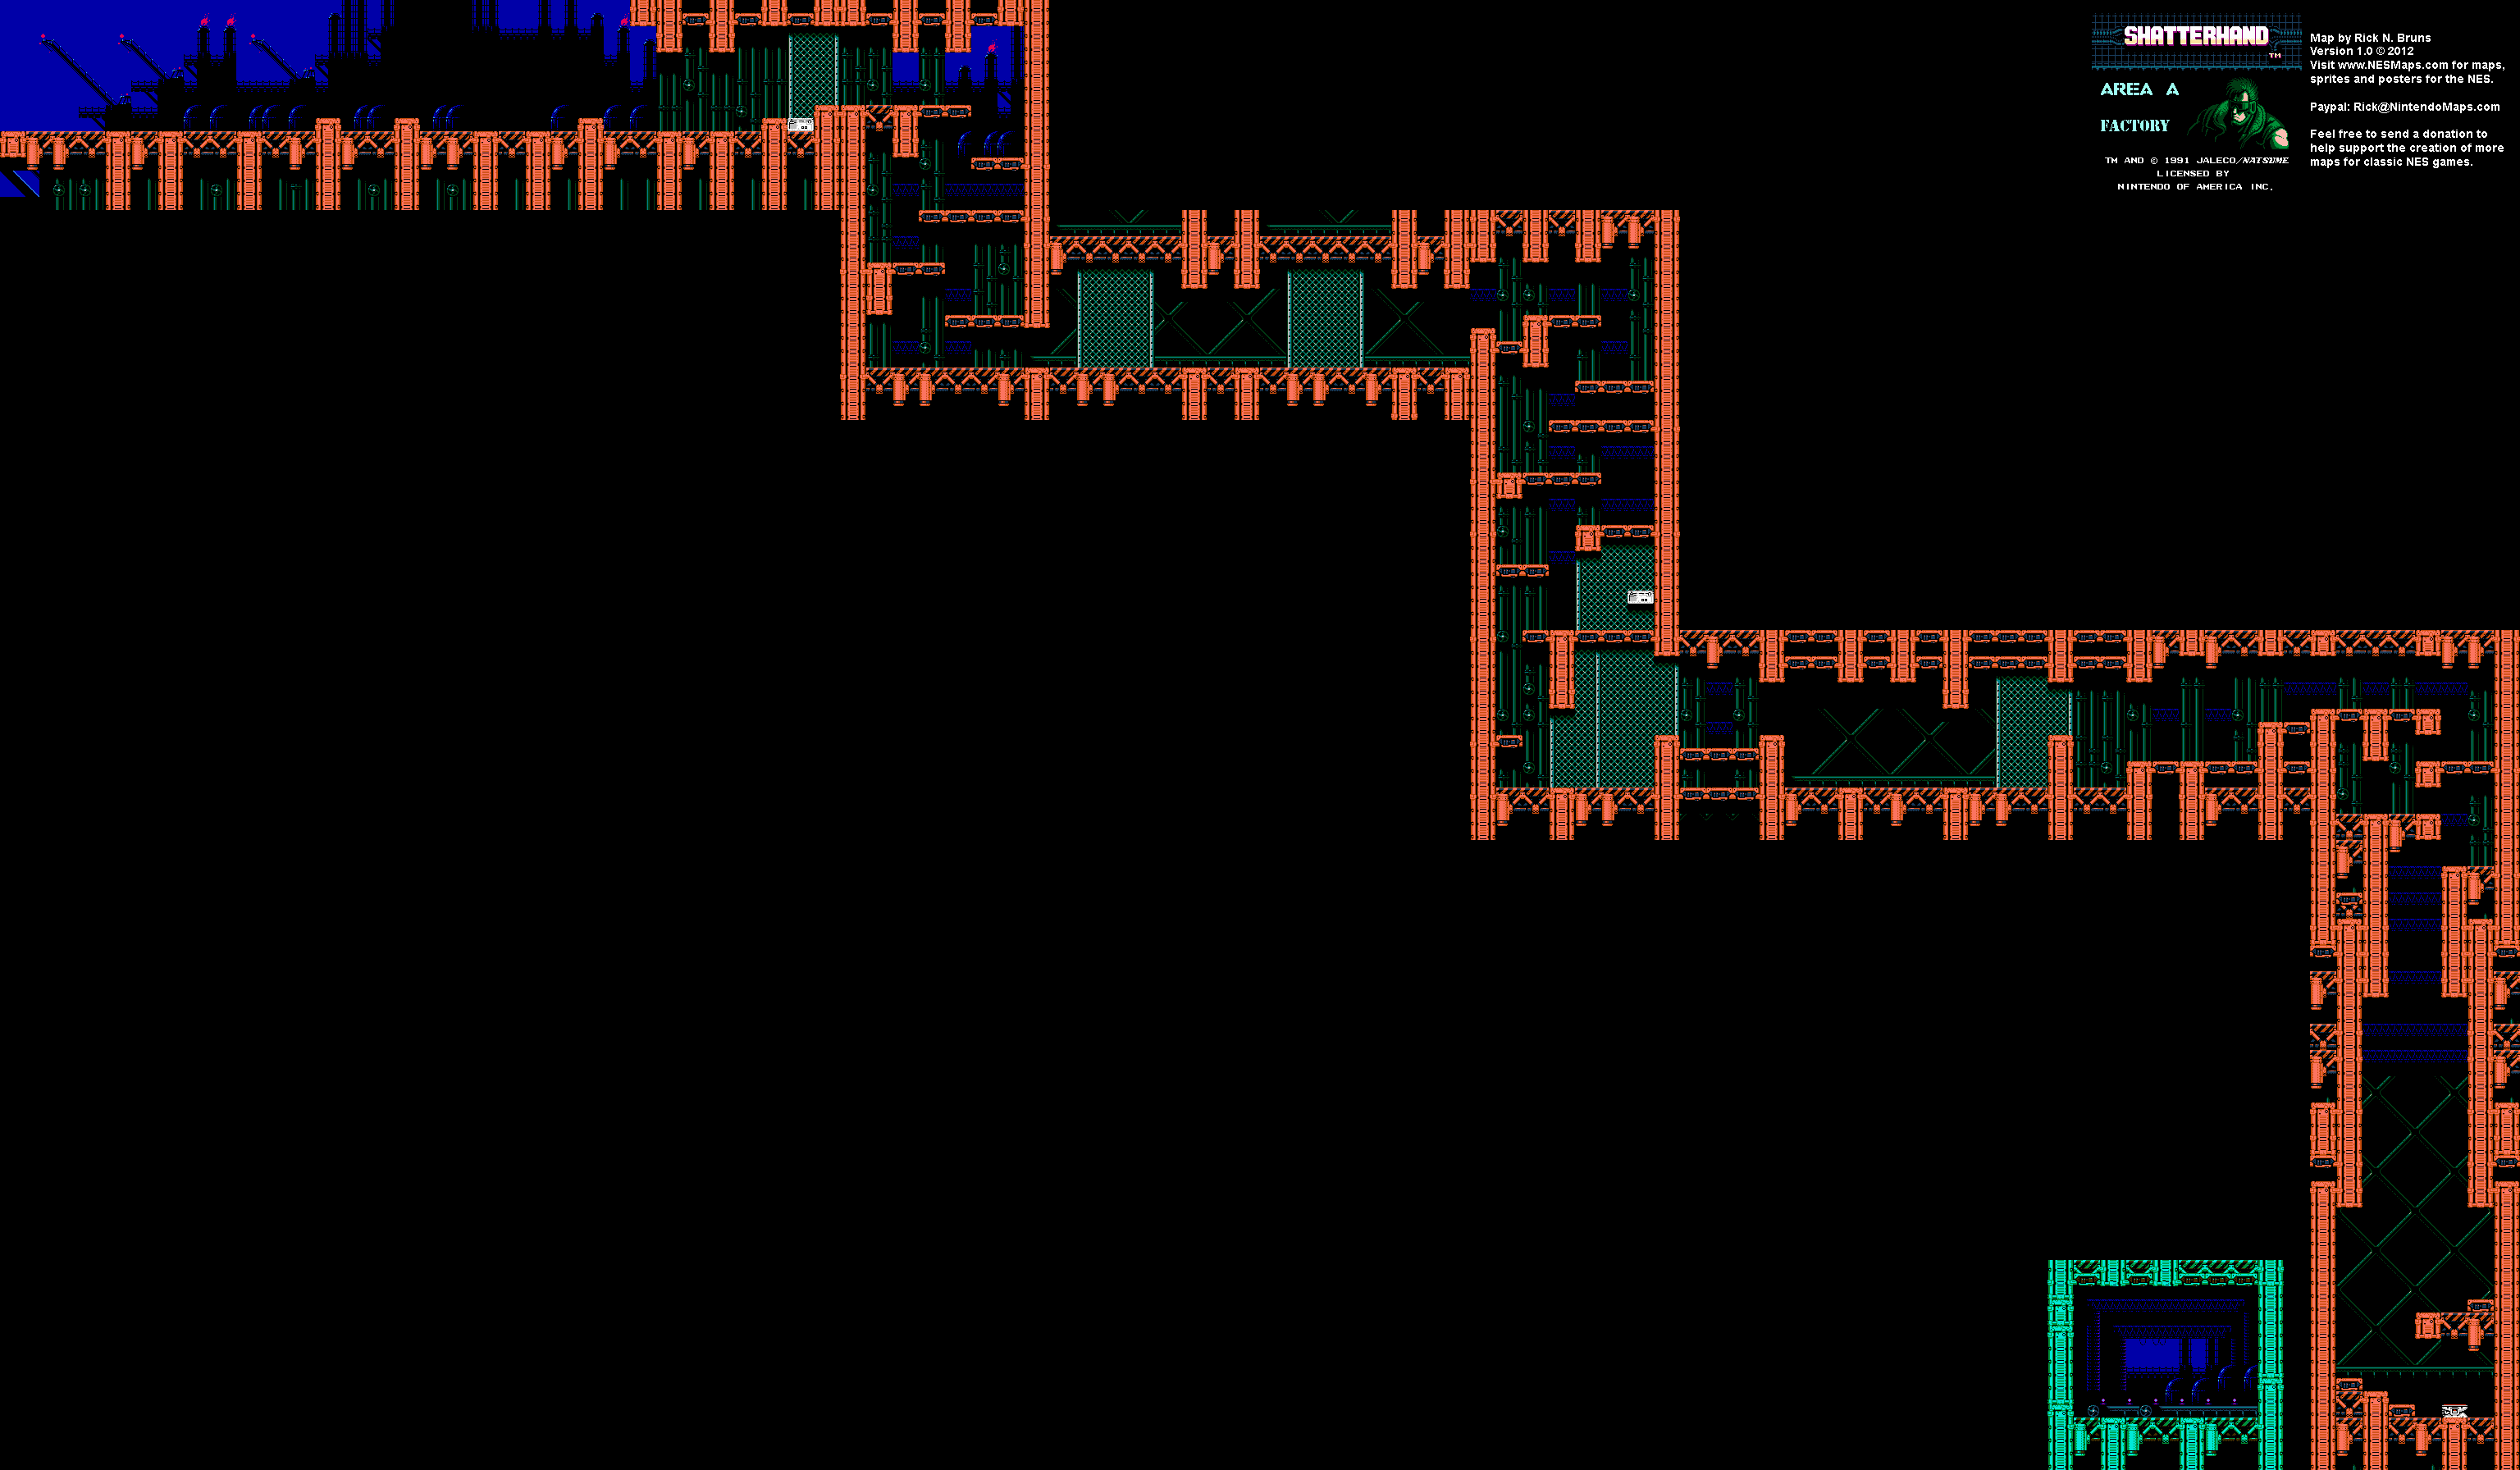 Shatterhand - Area A Factory - Nintendo NES Map BG